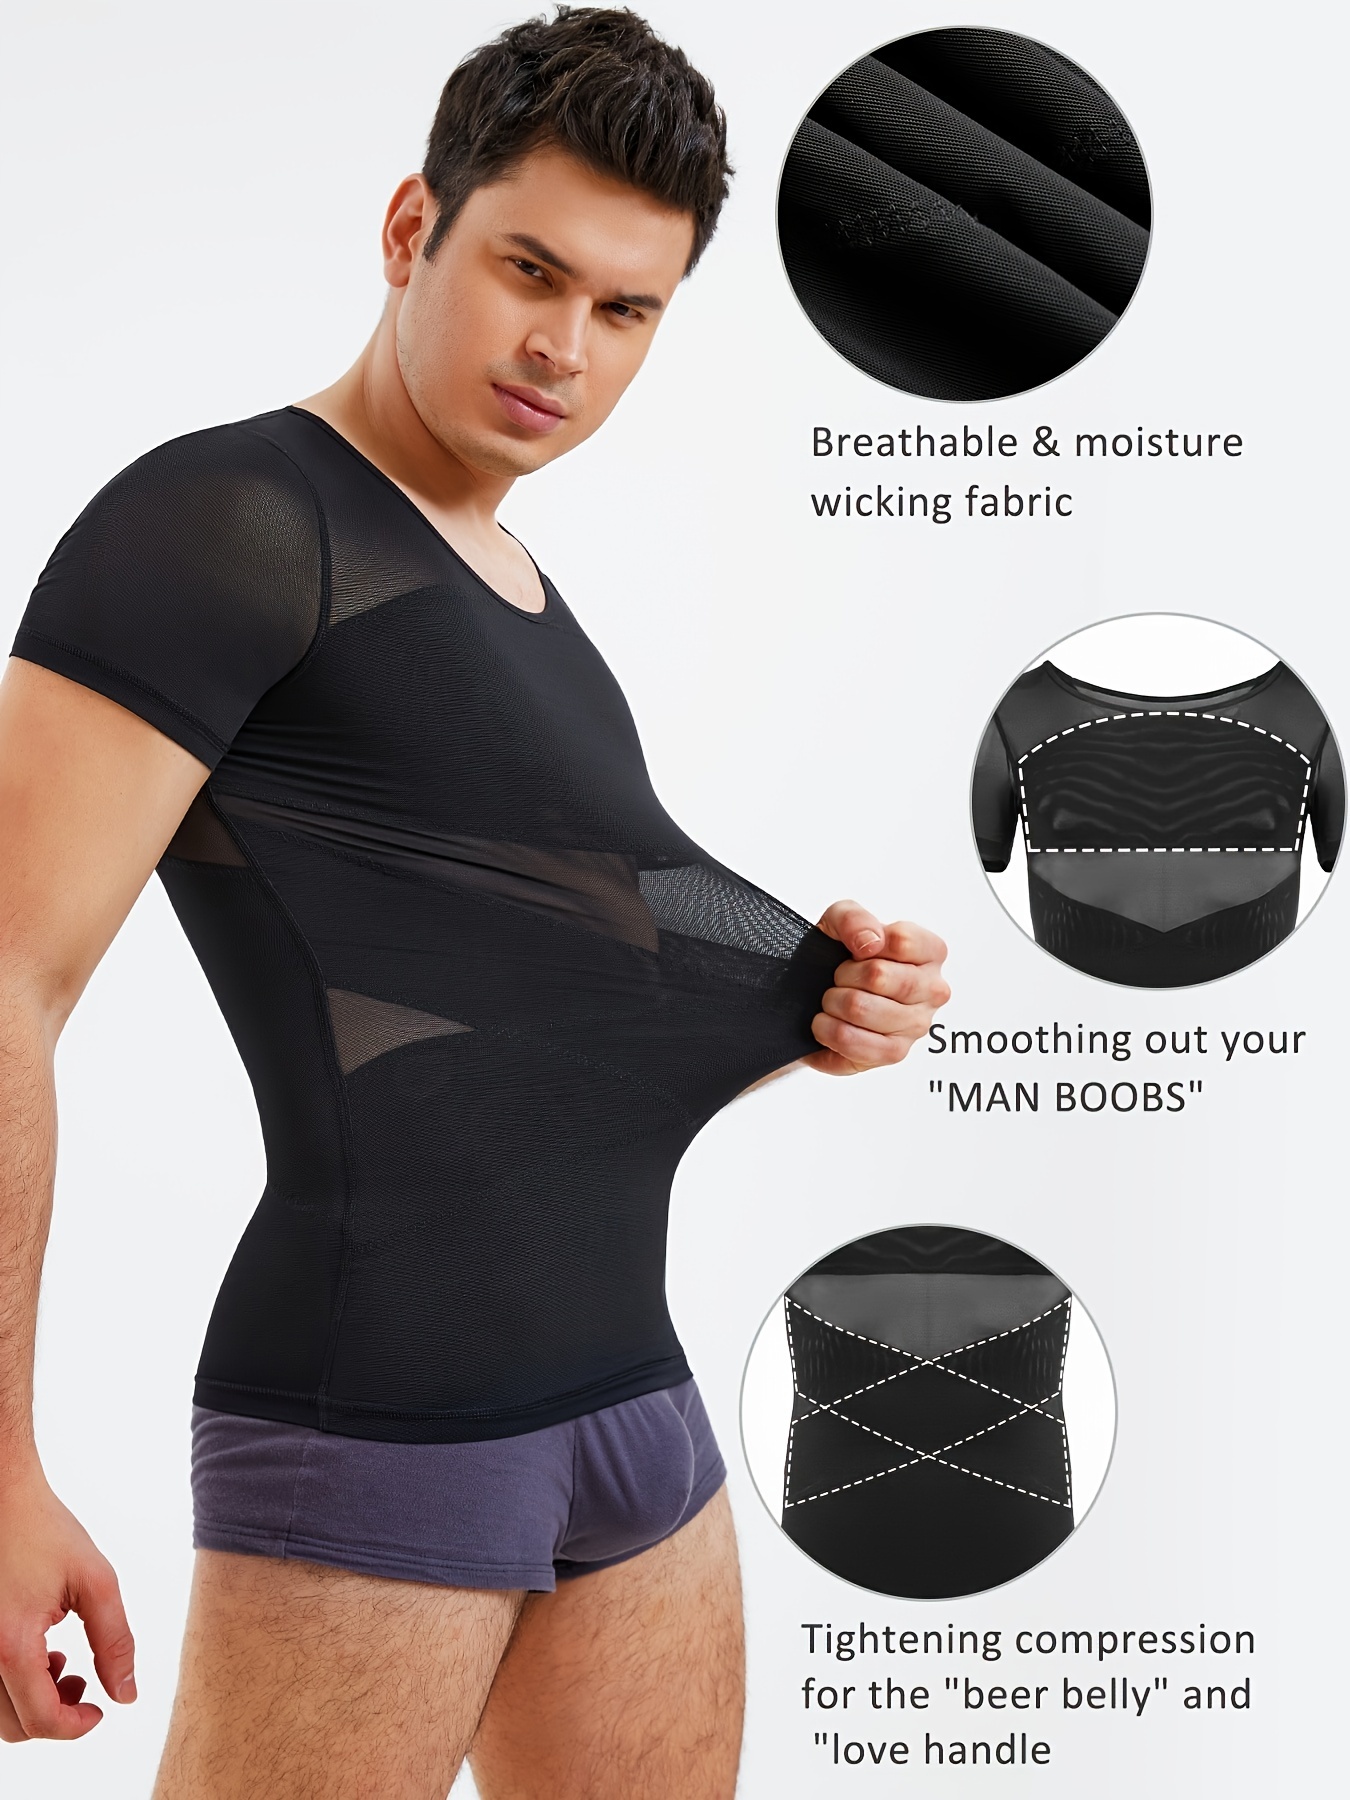 Mens Underwear Chest Compression Shirt Slimming Body Shaper Vest